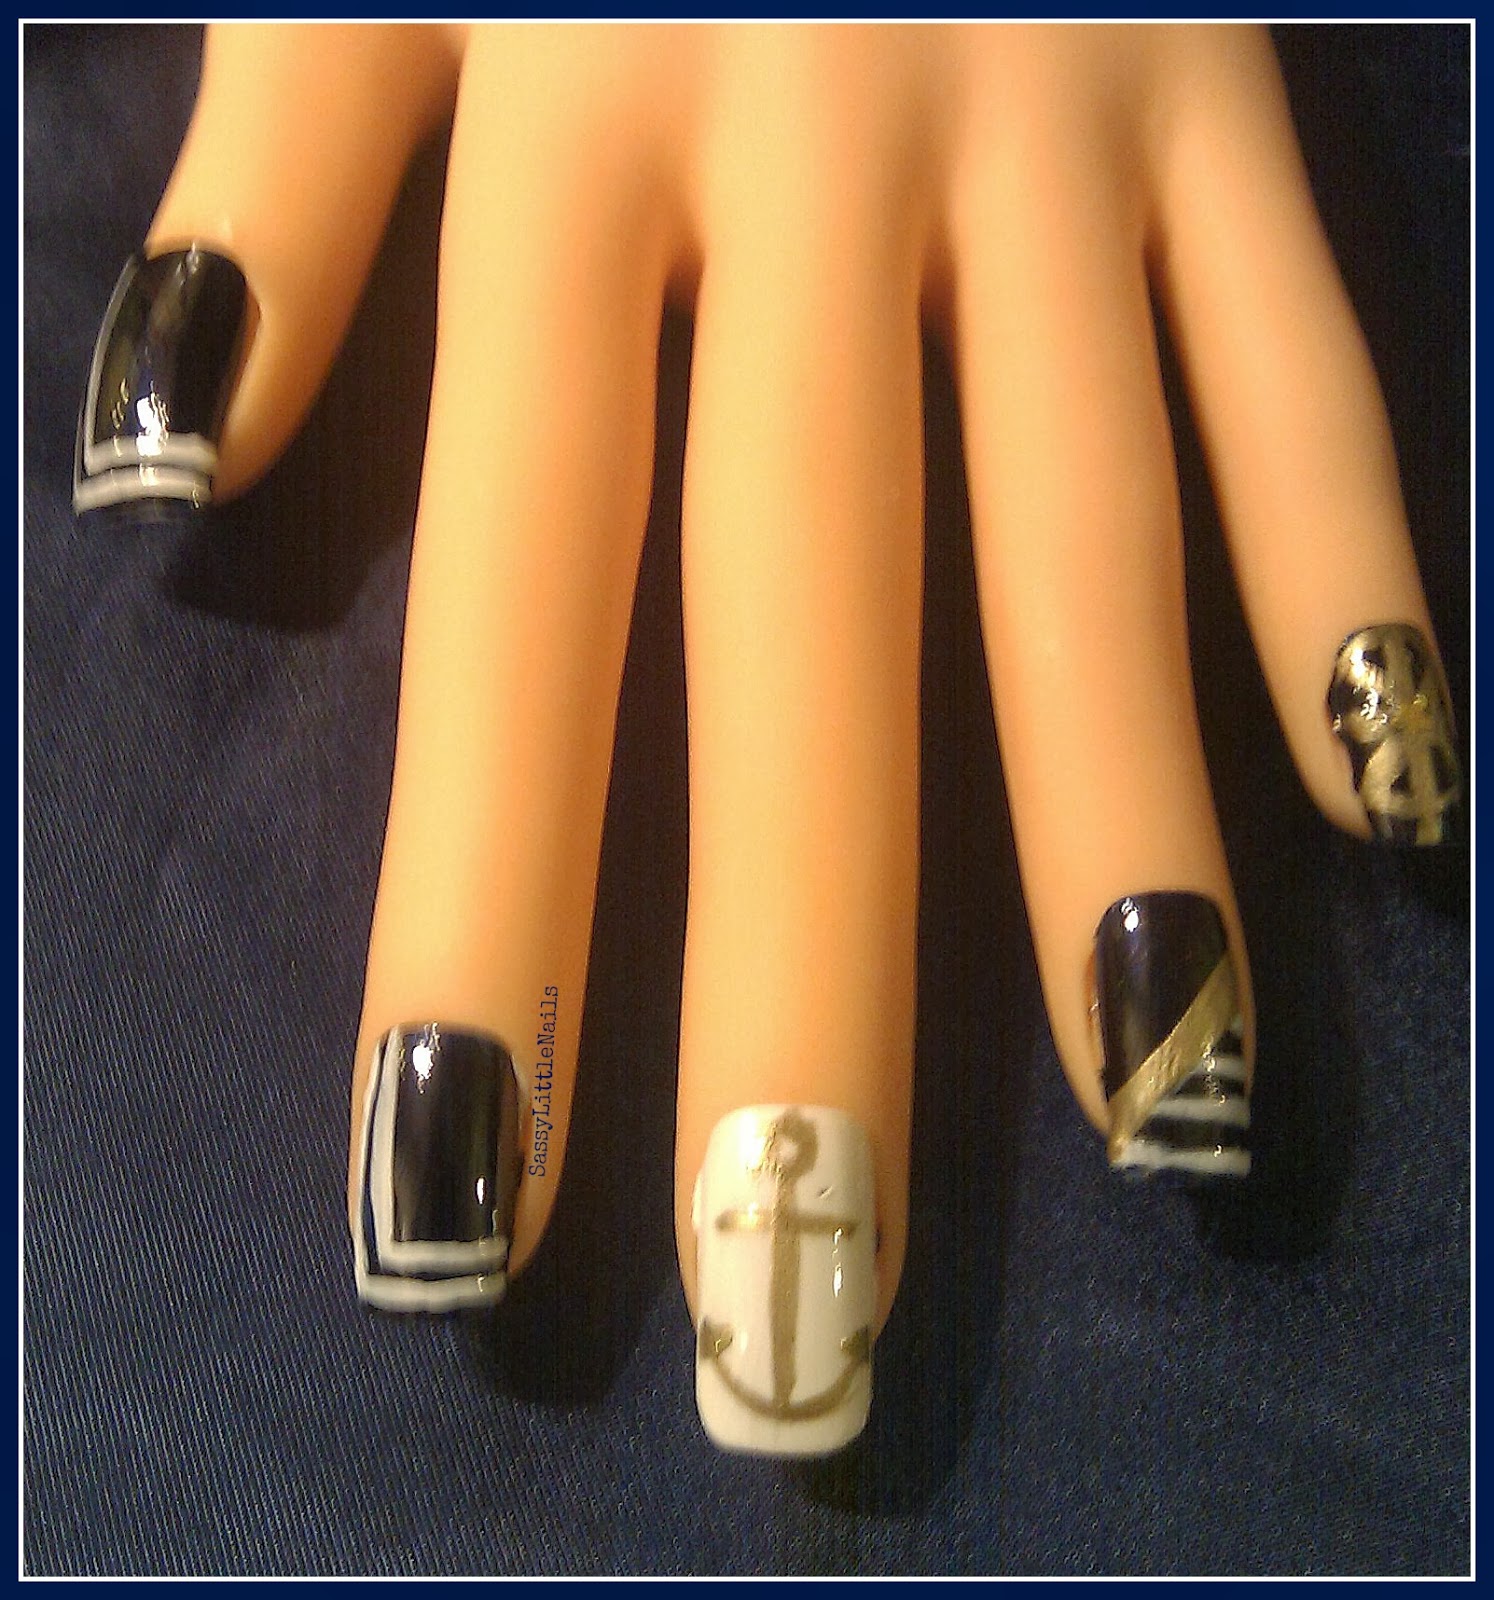 SassyLittleNails Royal Navy nail art